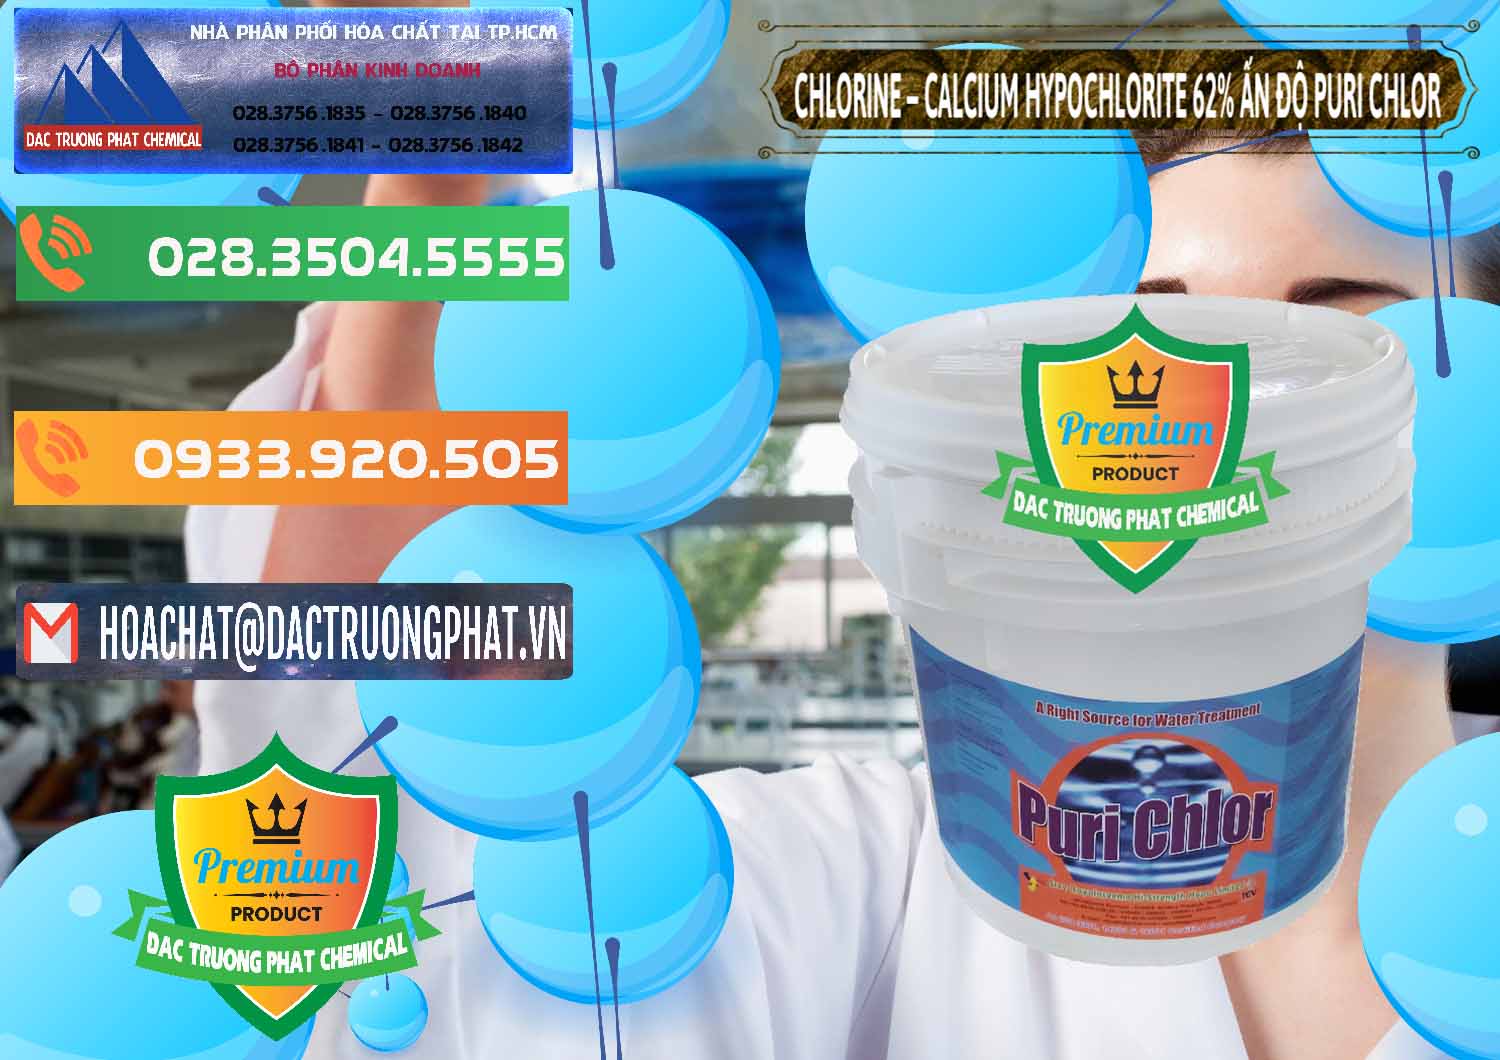 Cty chuyên nhập khẩu - bán Chlorine – Clorin 62% Puri Chlo Ấn Độ India - 0052 - Công ty phân phối và cung cấp hóa chất tại TP.HCM - hoachatxulynuoc.com.vn